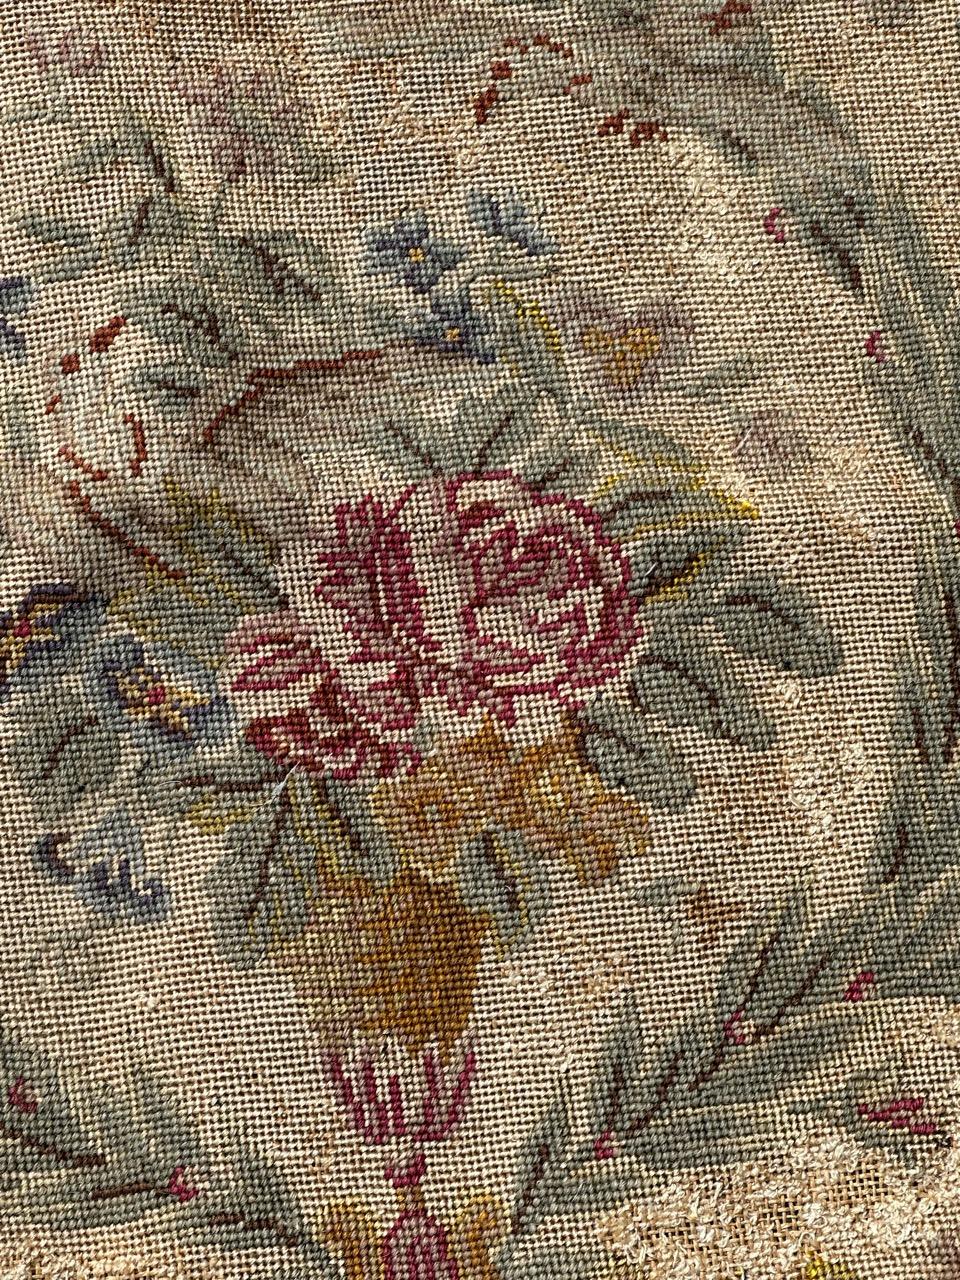 Exquise tapisserie à l'aiguille française de la fin du 19e siècle, provenant à l'origine d'une housse de chaise, mais pouvant également être utilisée pour des coussins ou des cadres. Ornée d'un captivant motif floral de l'époque Napoléon III, cette